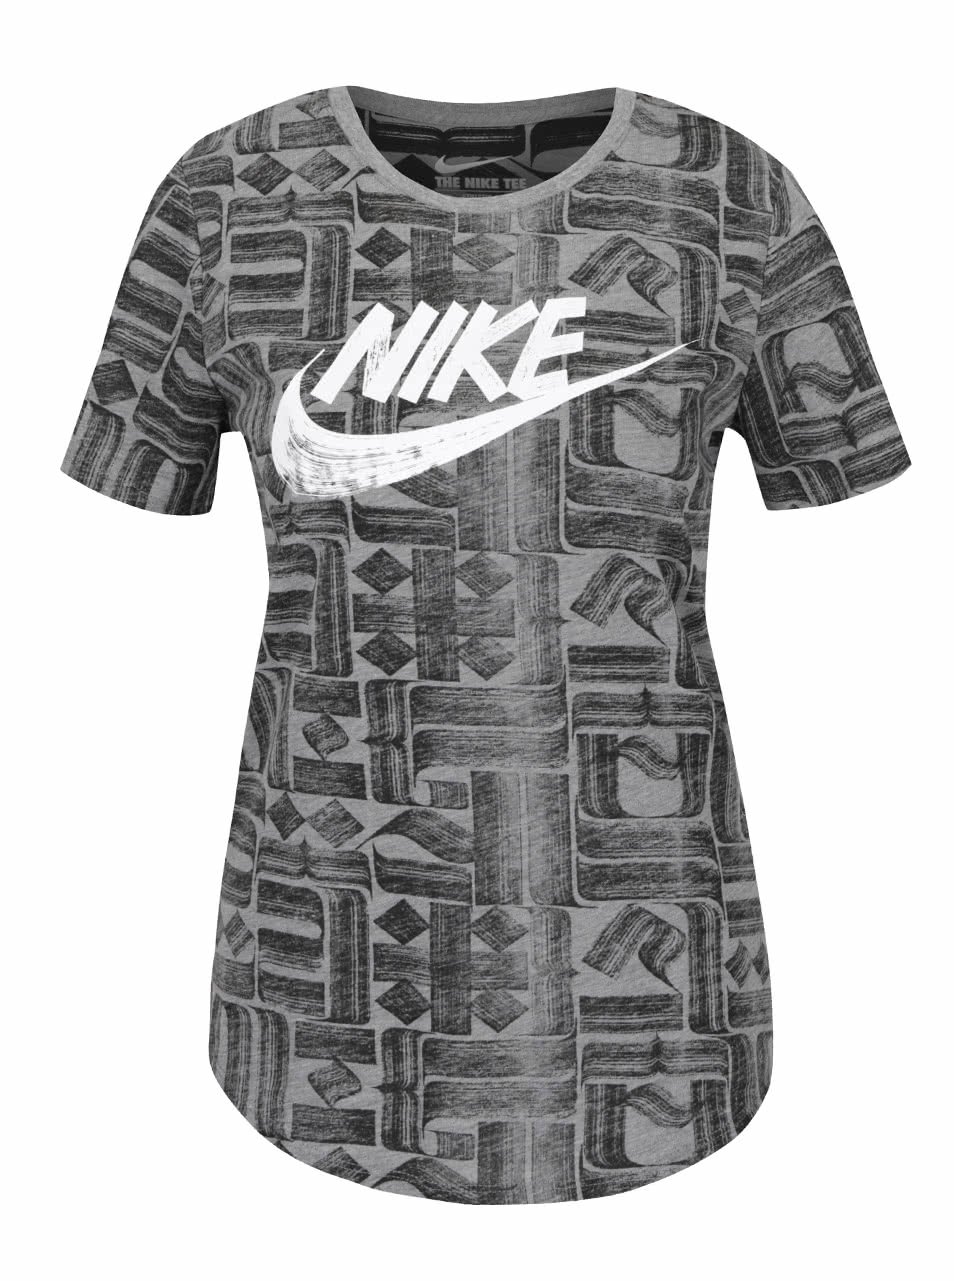 Černo-šedé dámské tričko s krátkým rukávem Nike